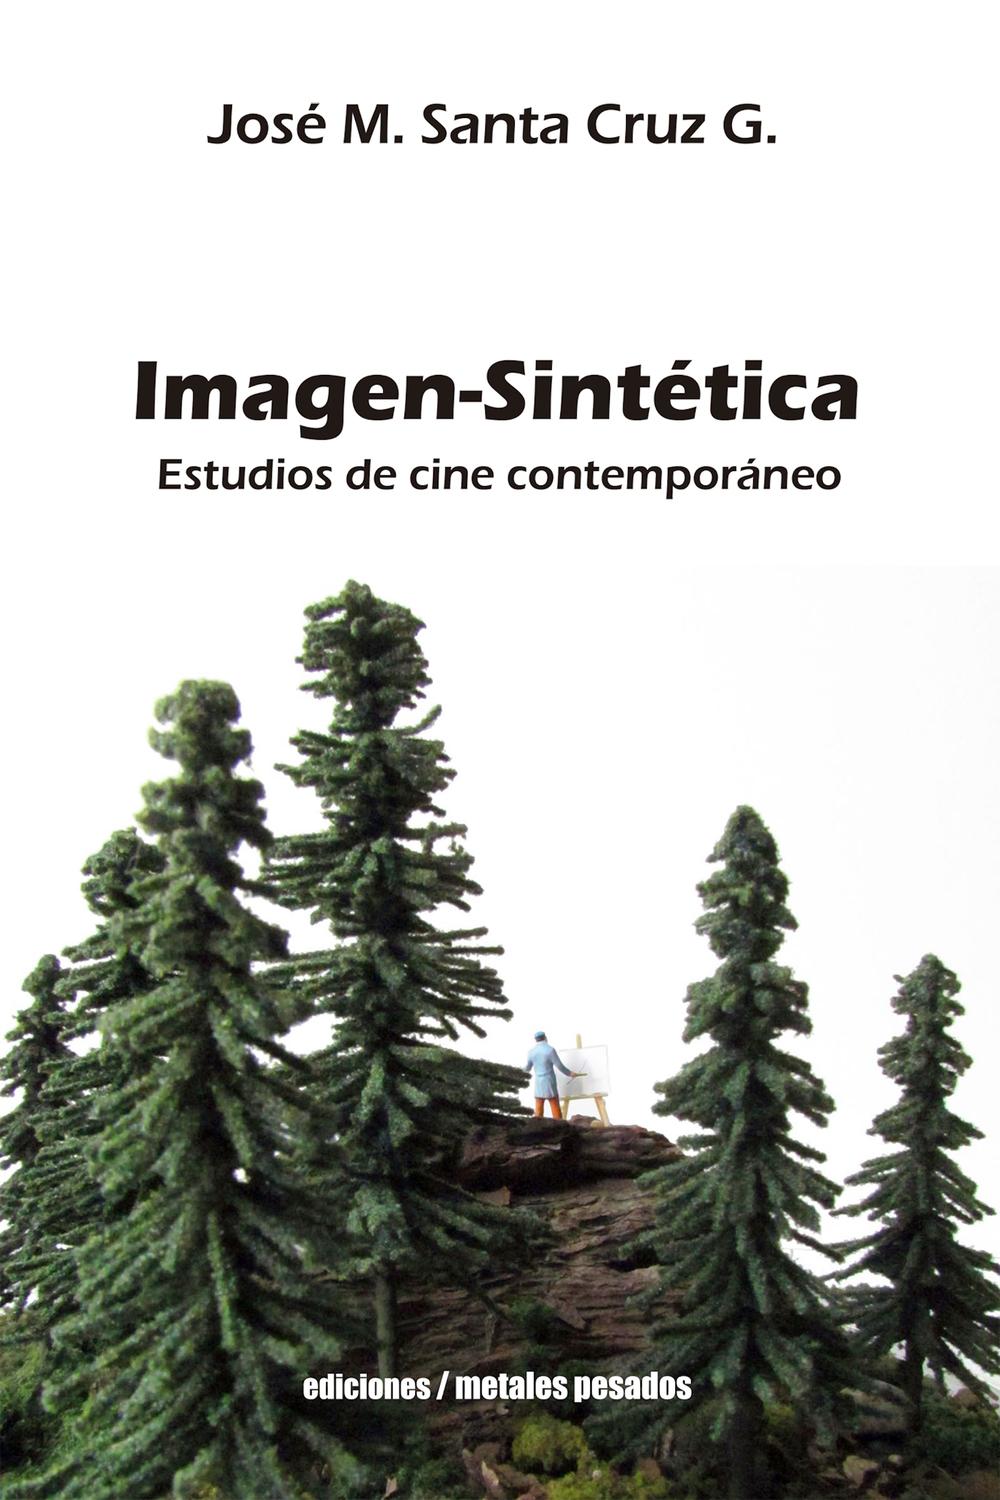 Imagen-Sintética - José M. Santa Cruz